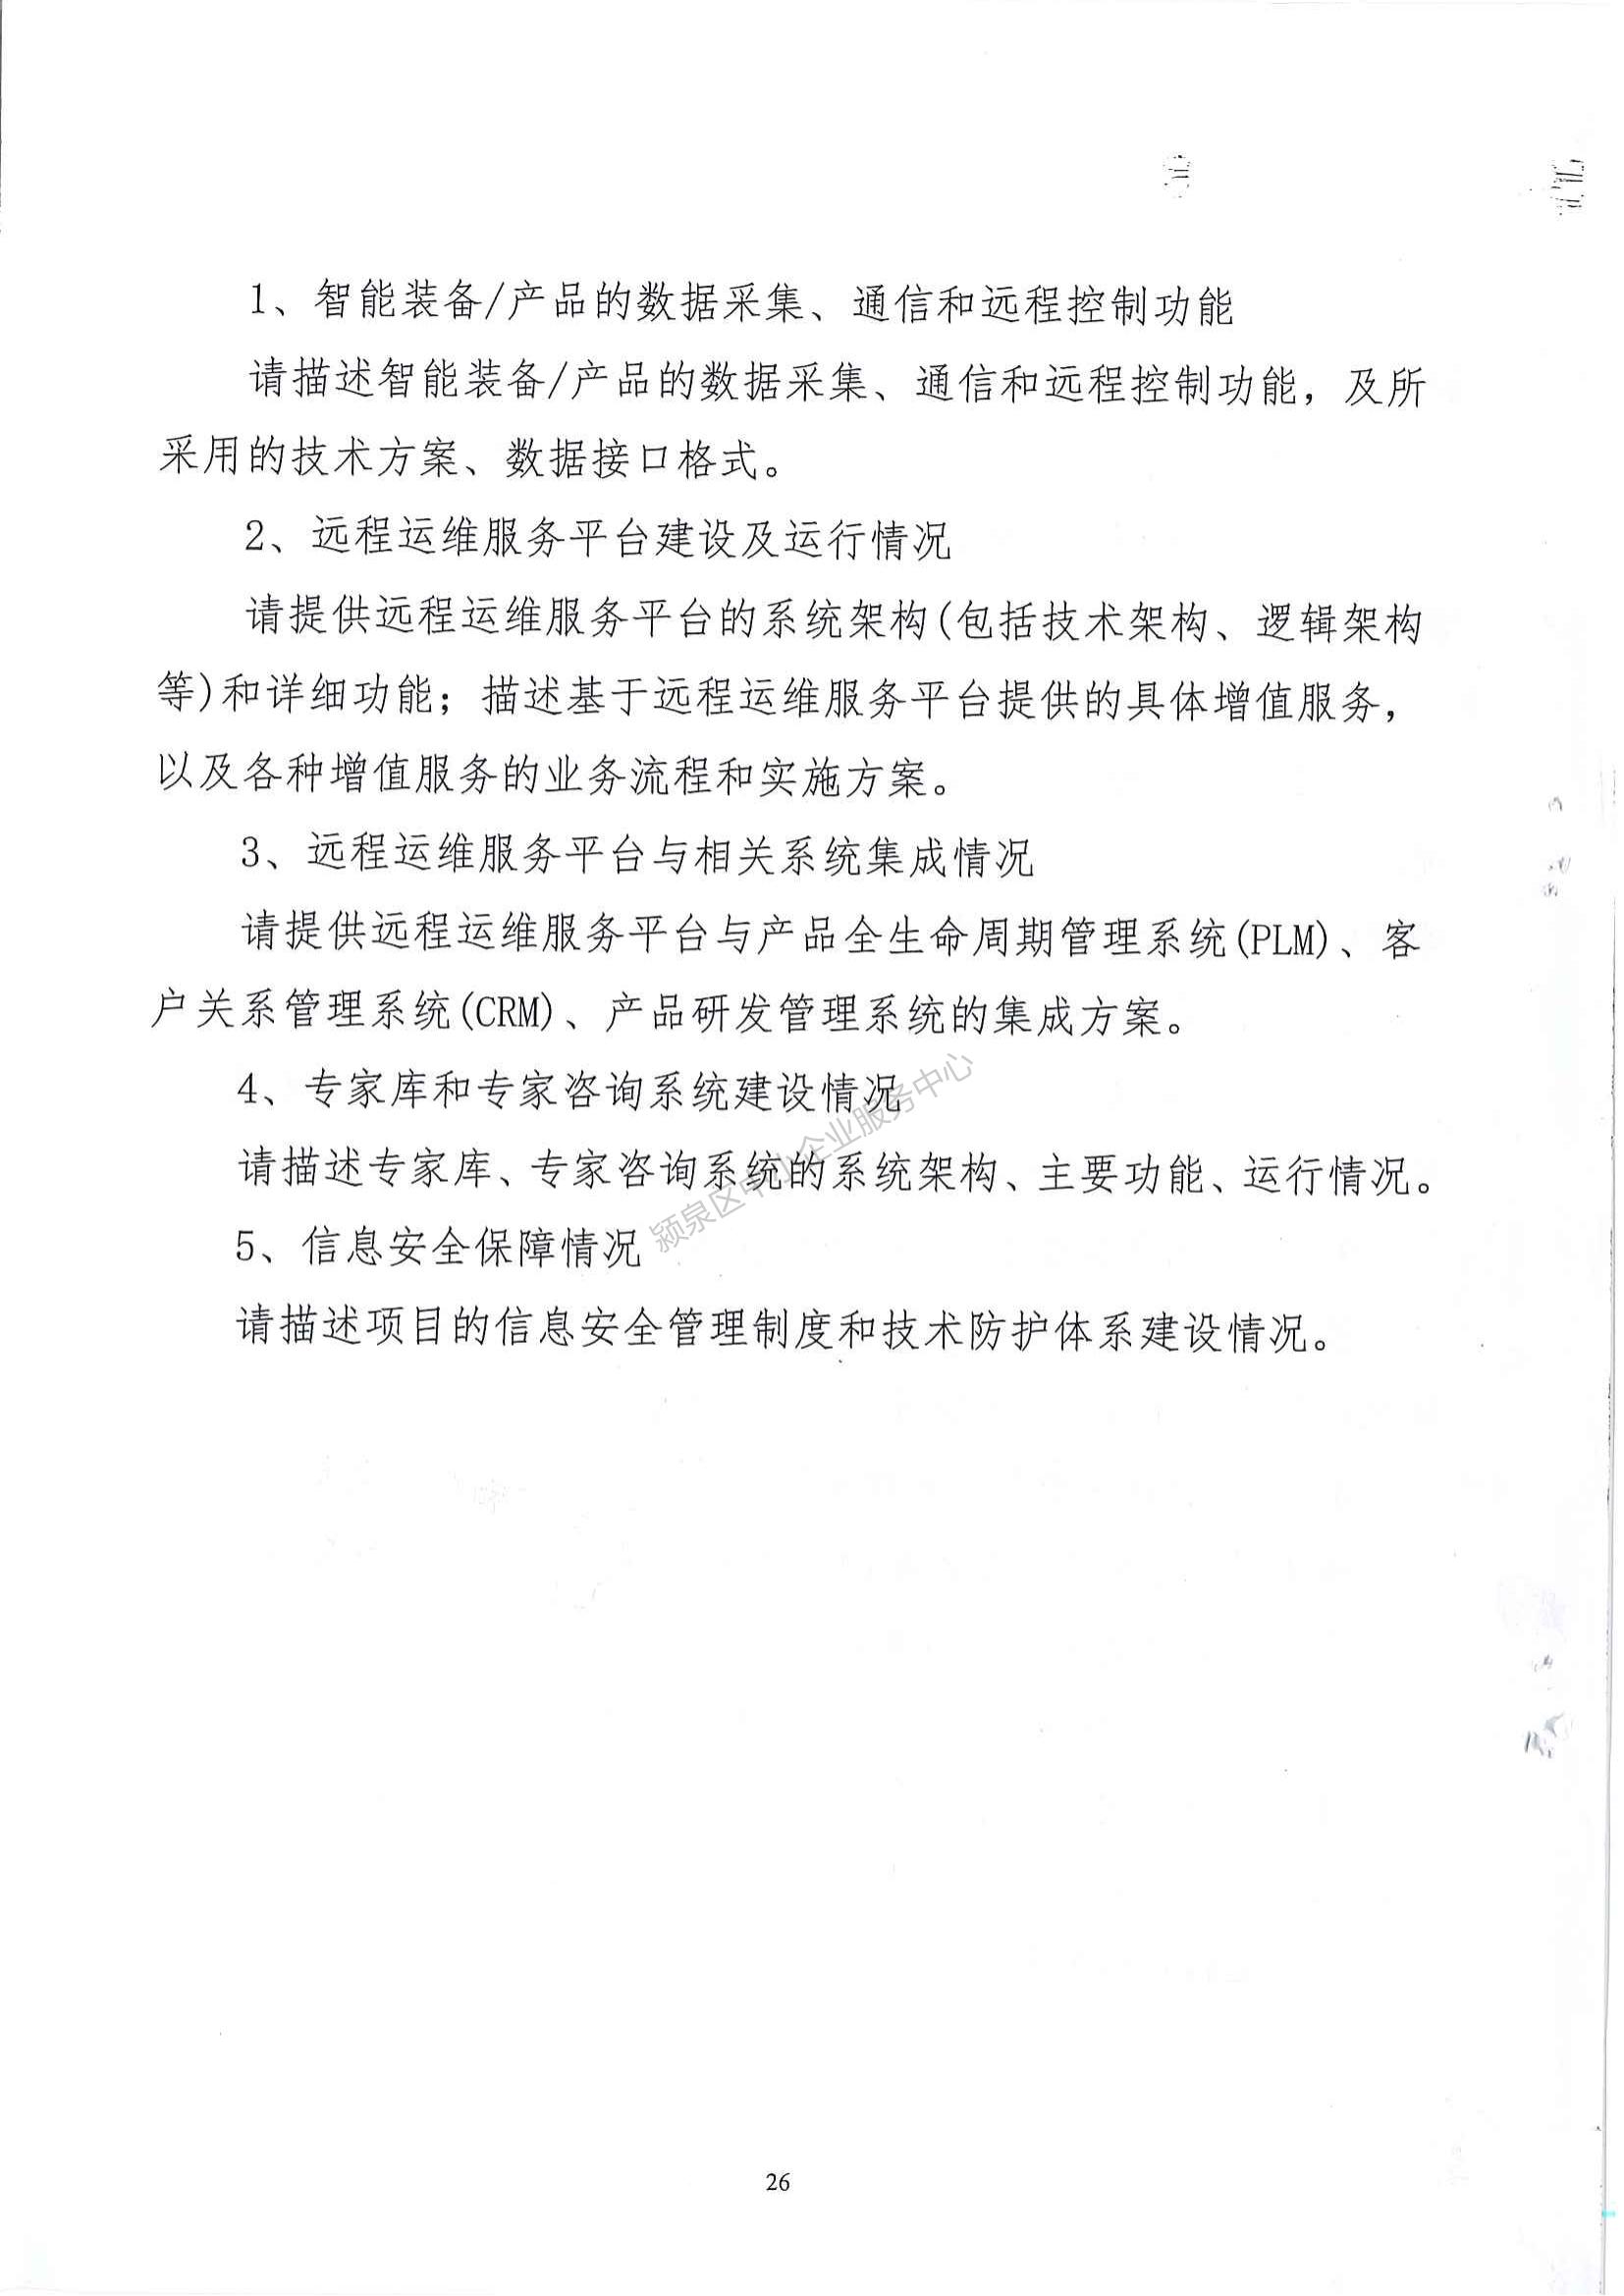 阜阳市智能工厂和数字化车间认定管理暂行办法_26.jpg